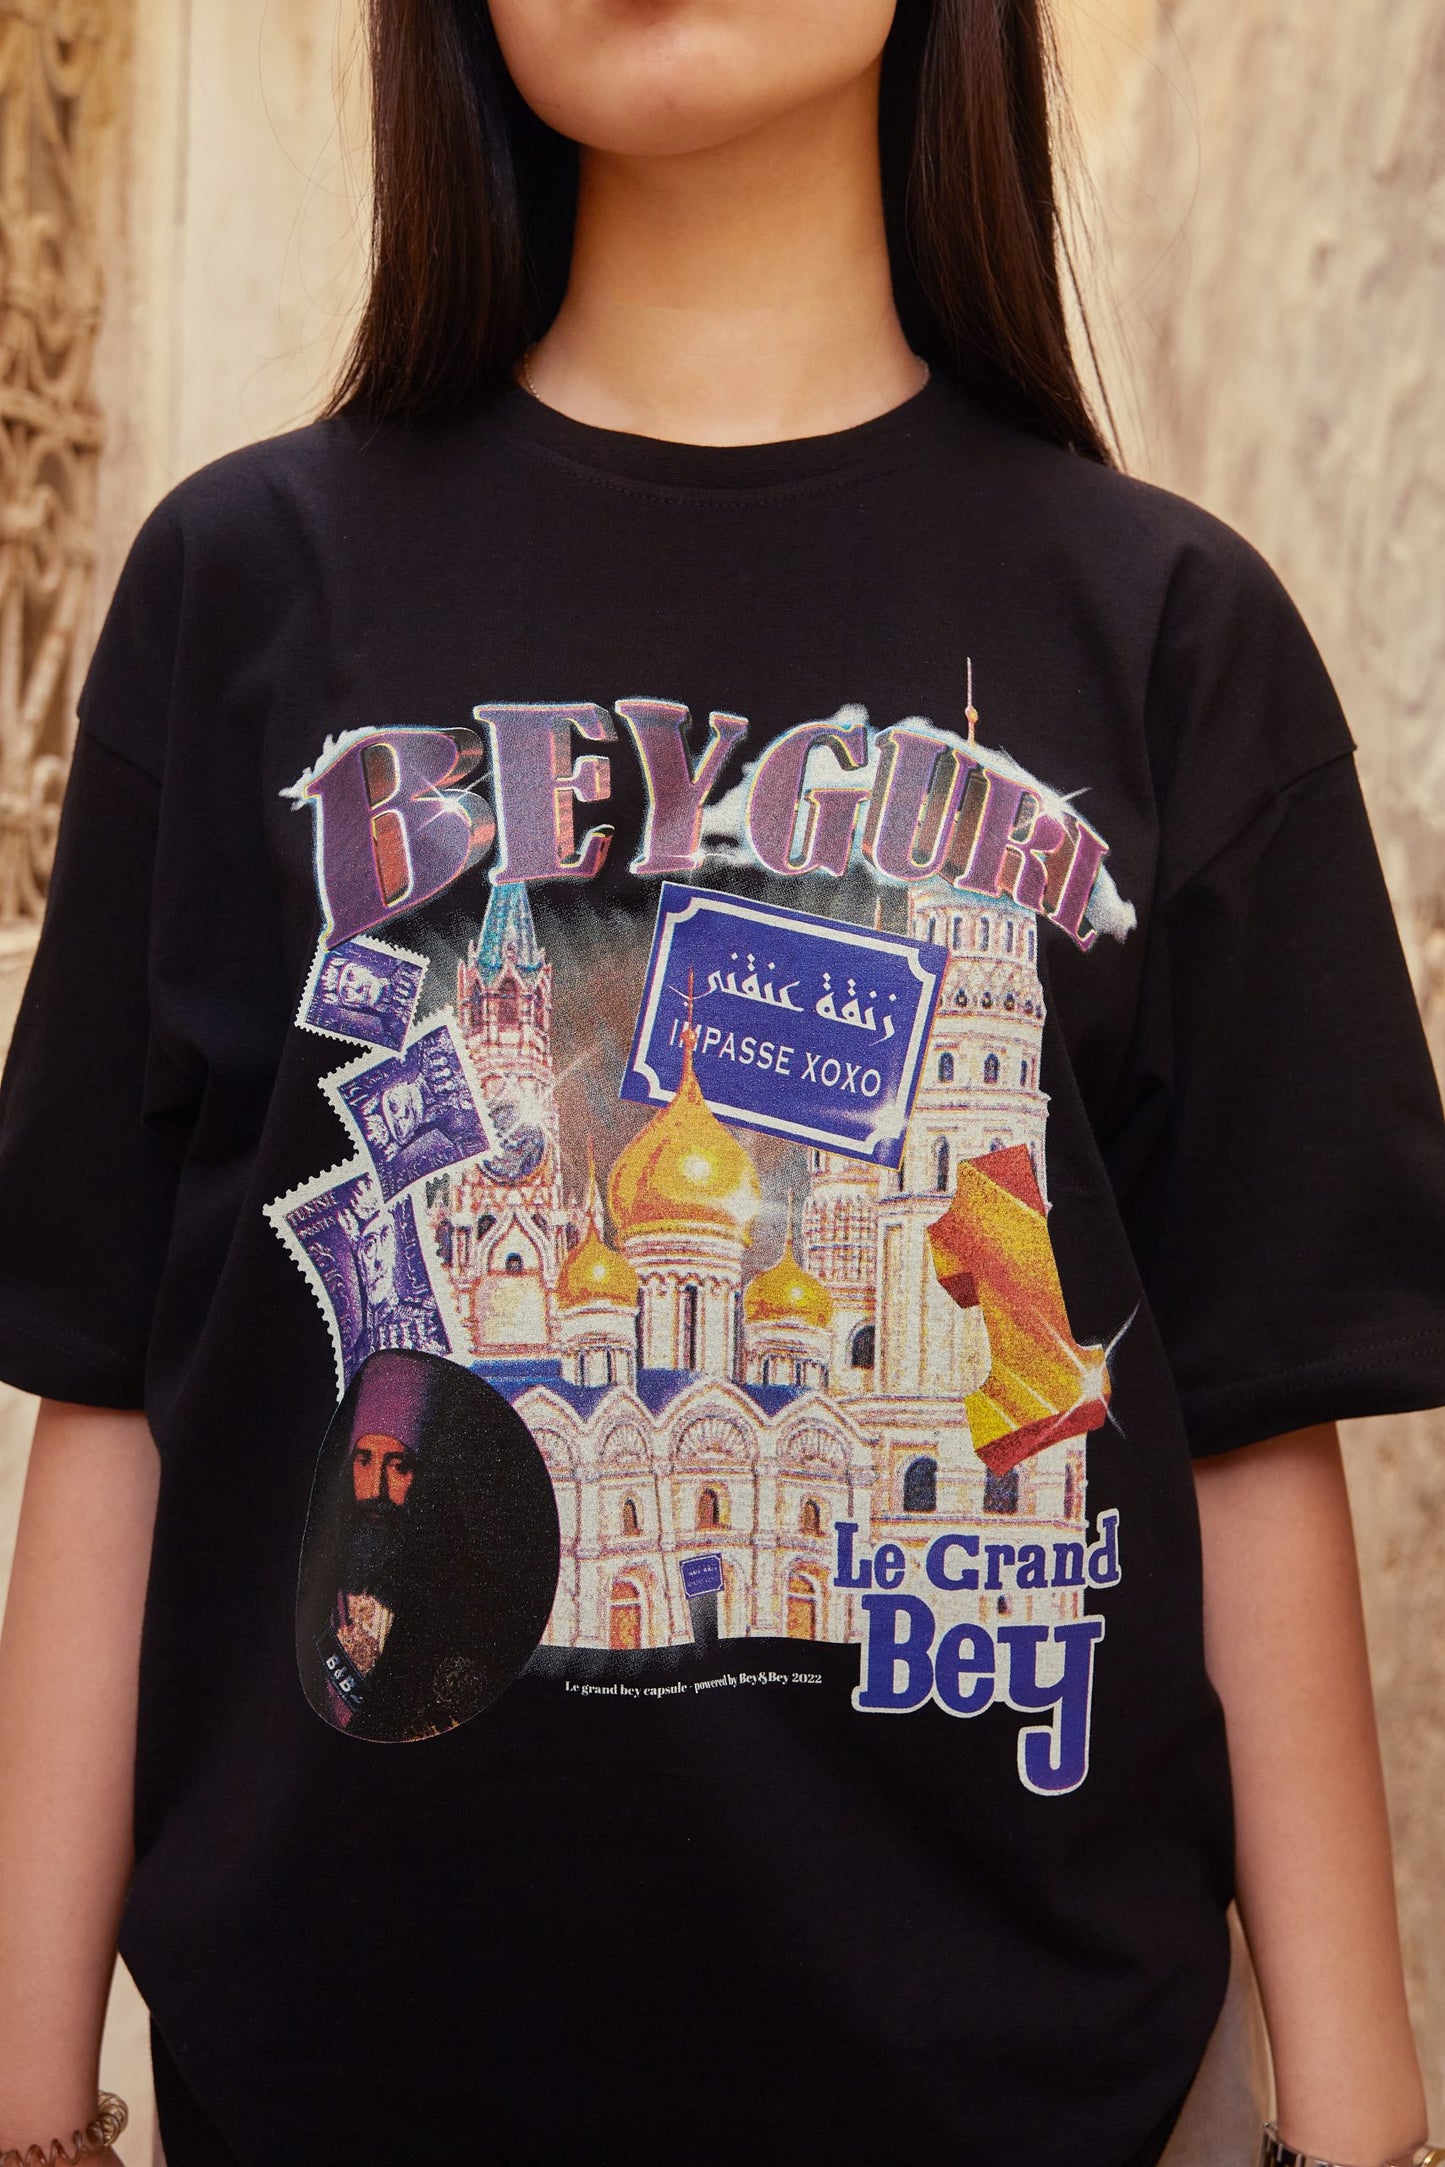 Vintage 22 beygurl t-shirt